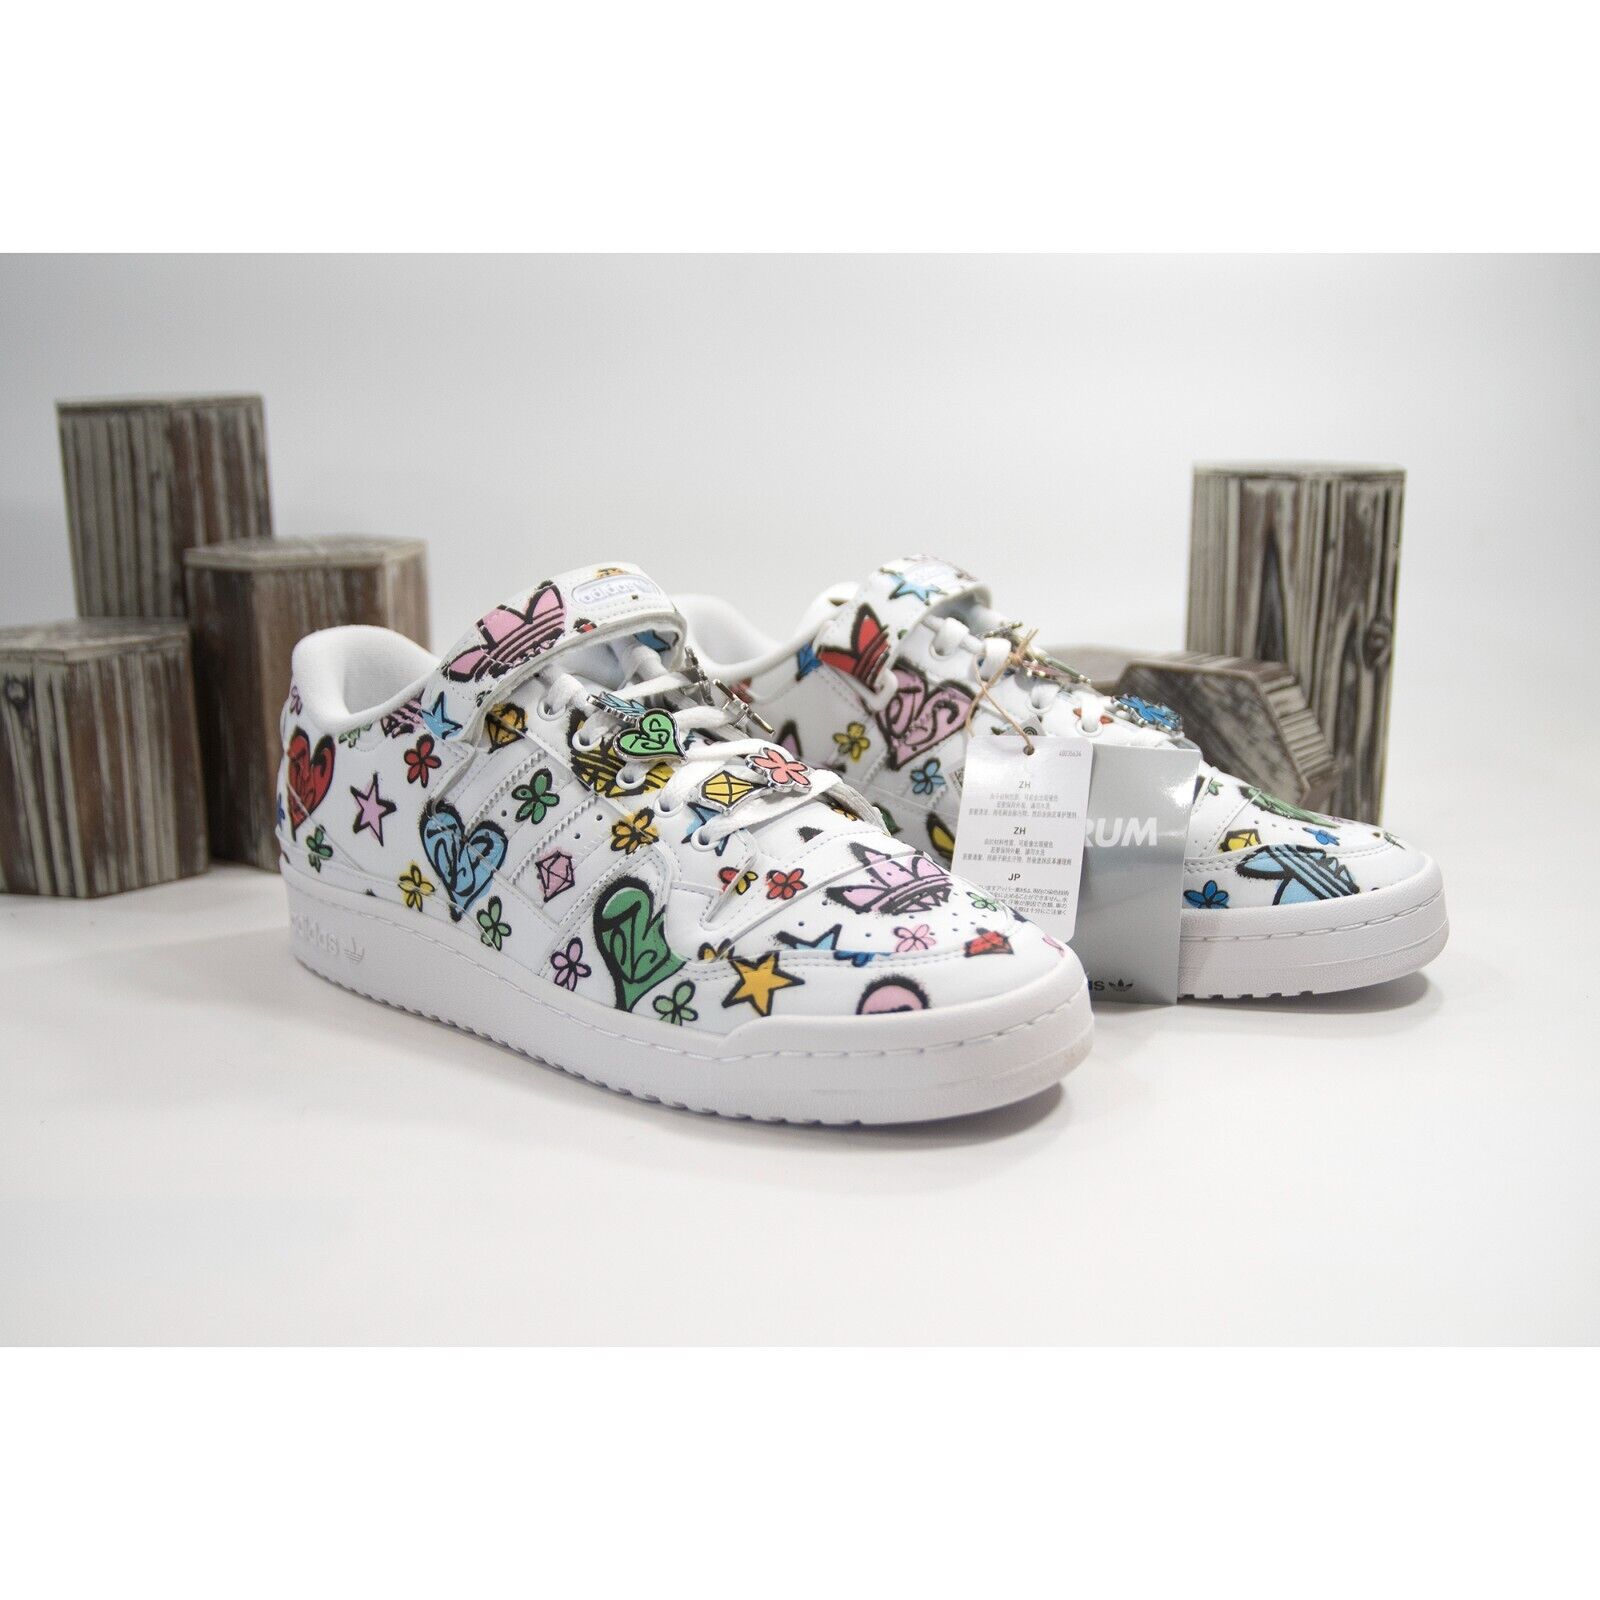 X Jeremy Scott 84 Low Monogram Sneakers Shoes Mens 11 NIB – Design Her Boutique